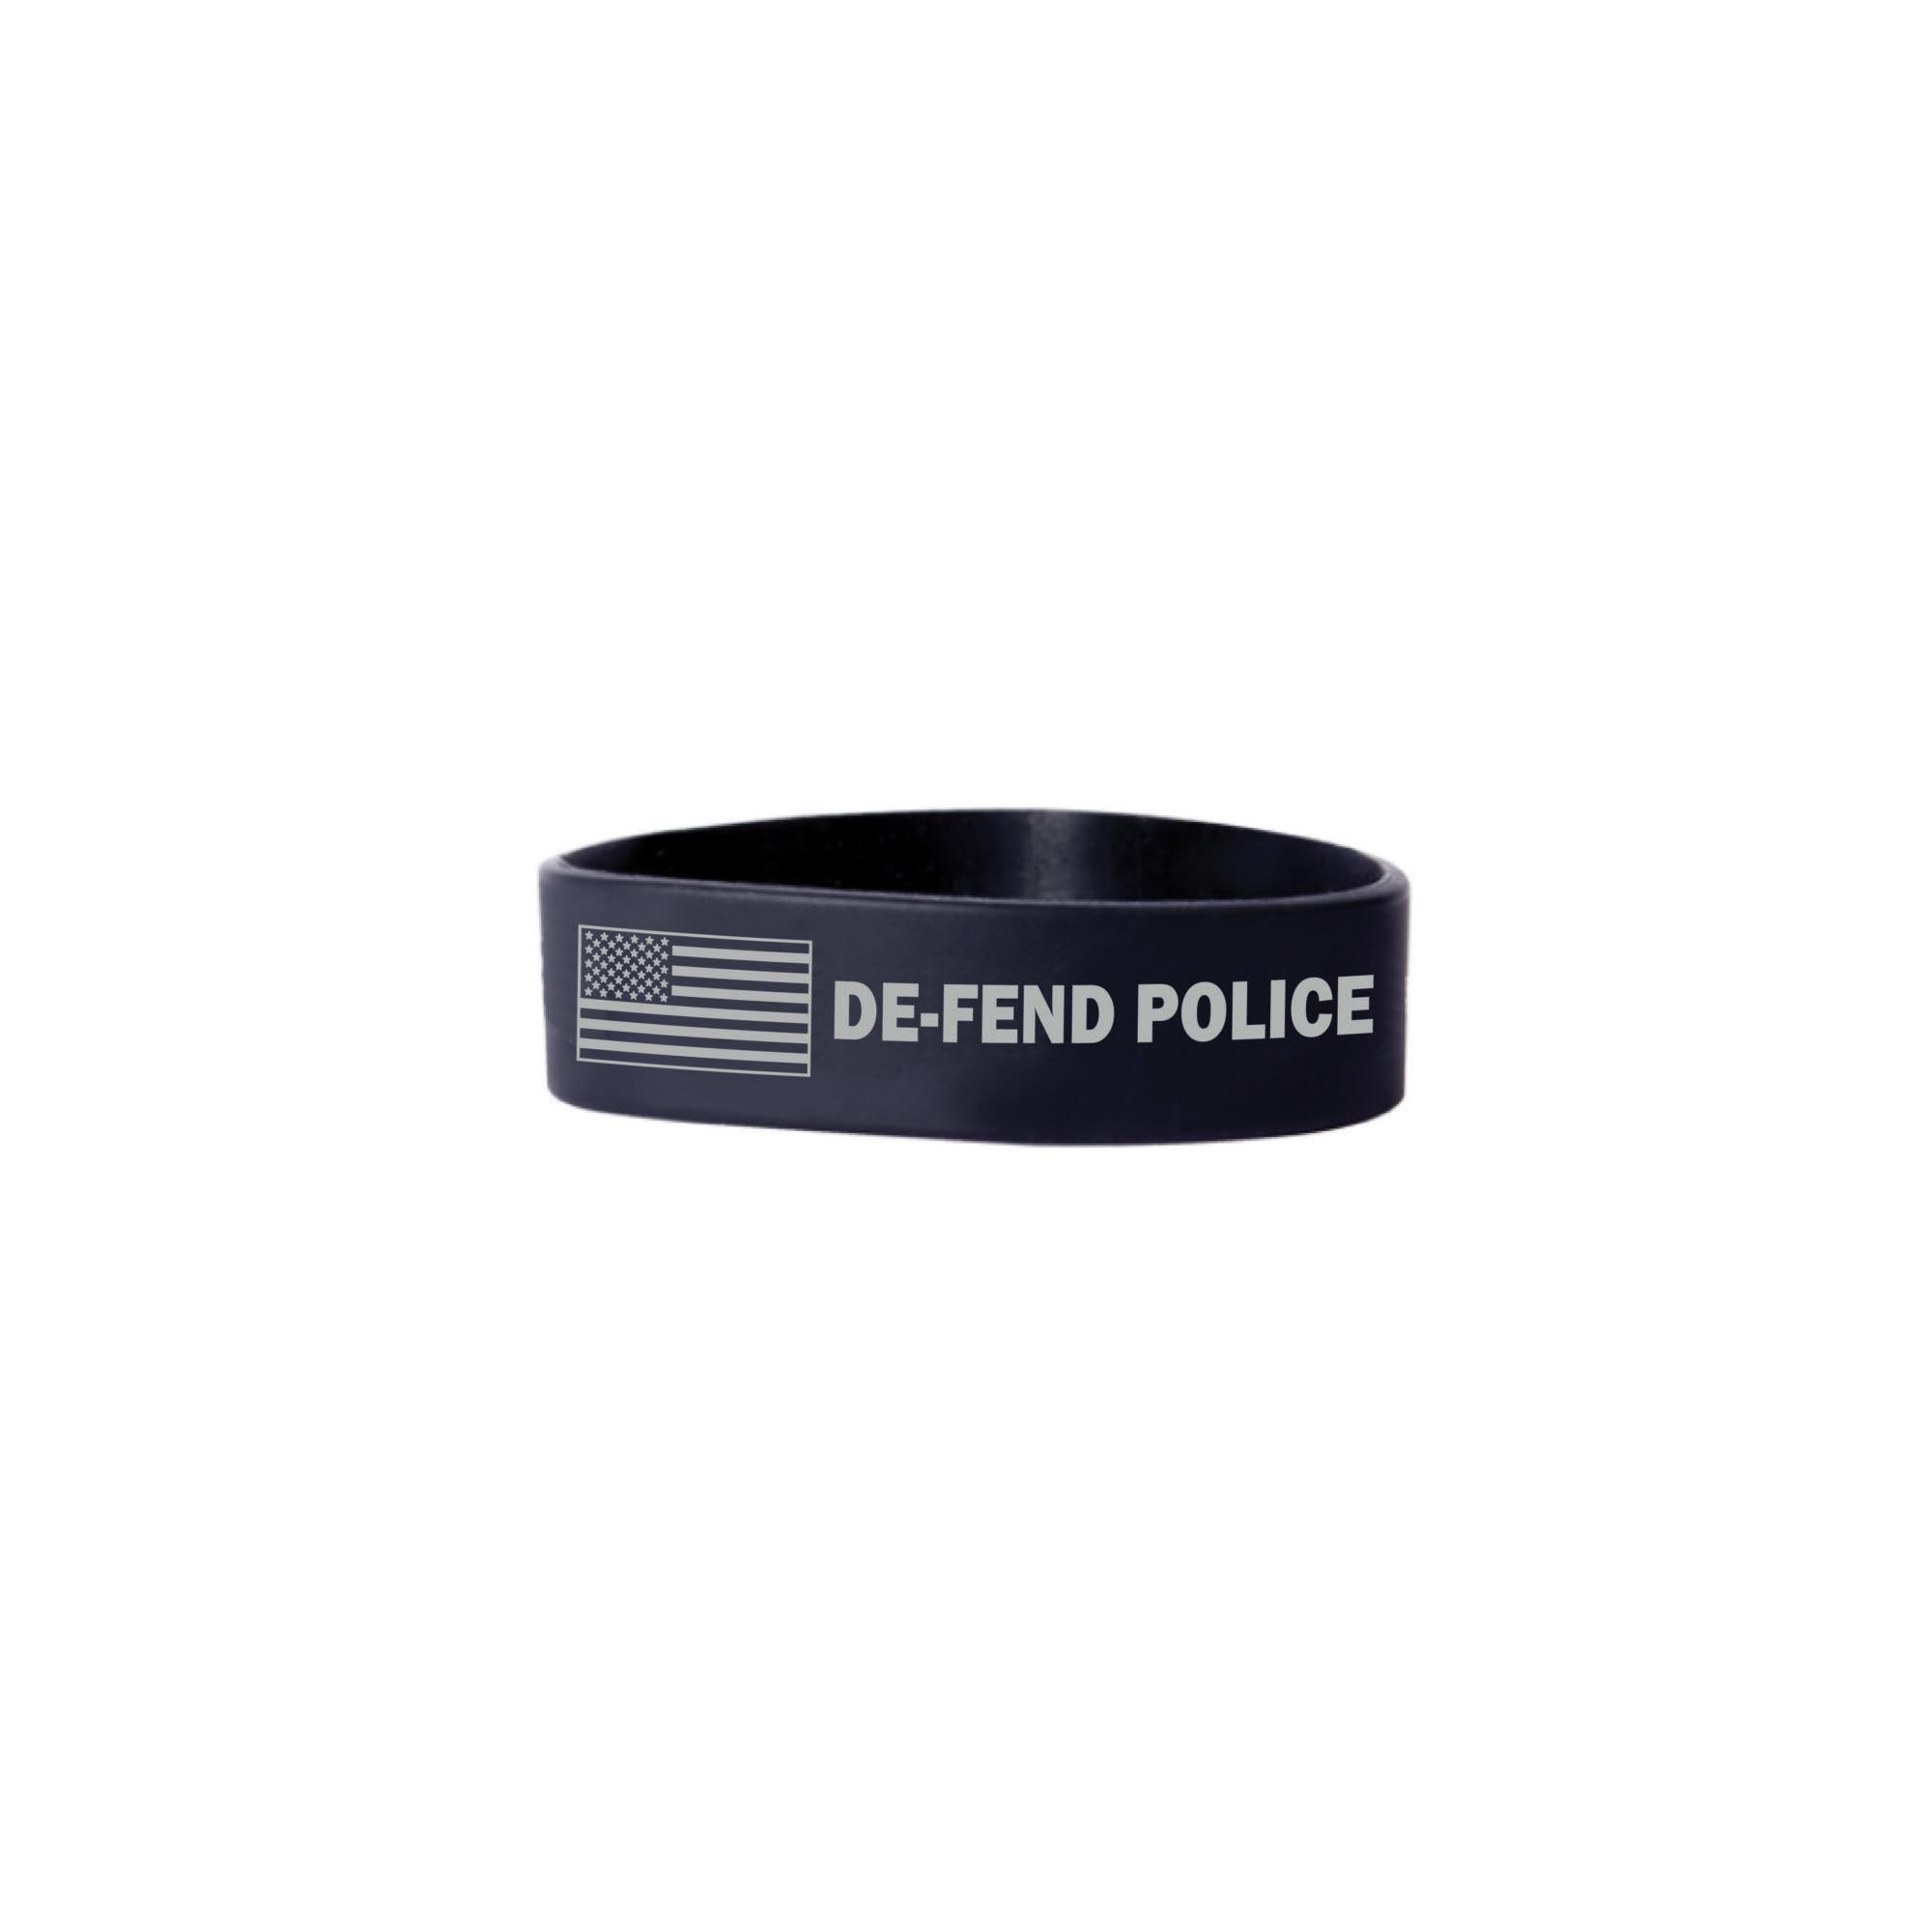 Police Wristband – DE-FEND